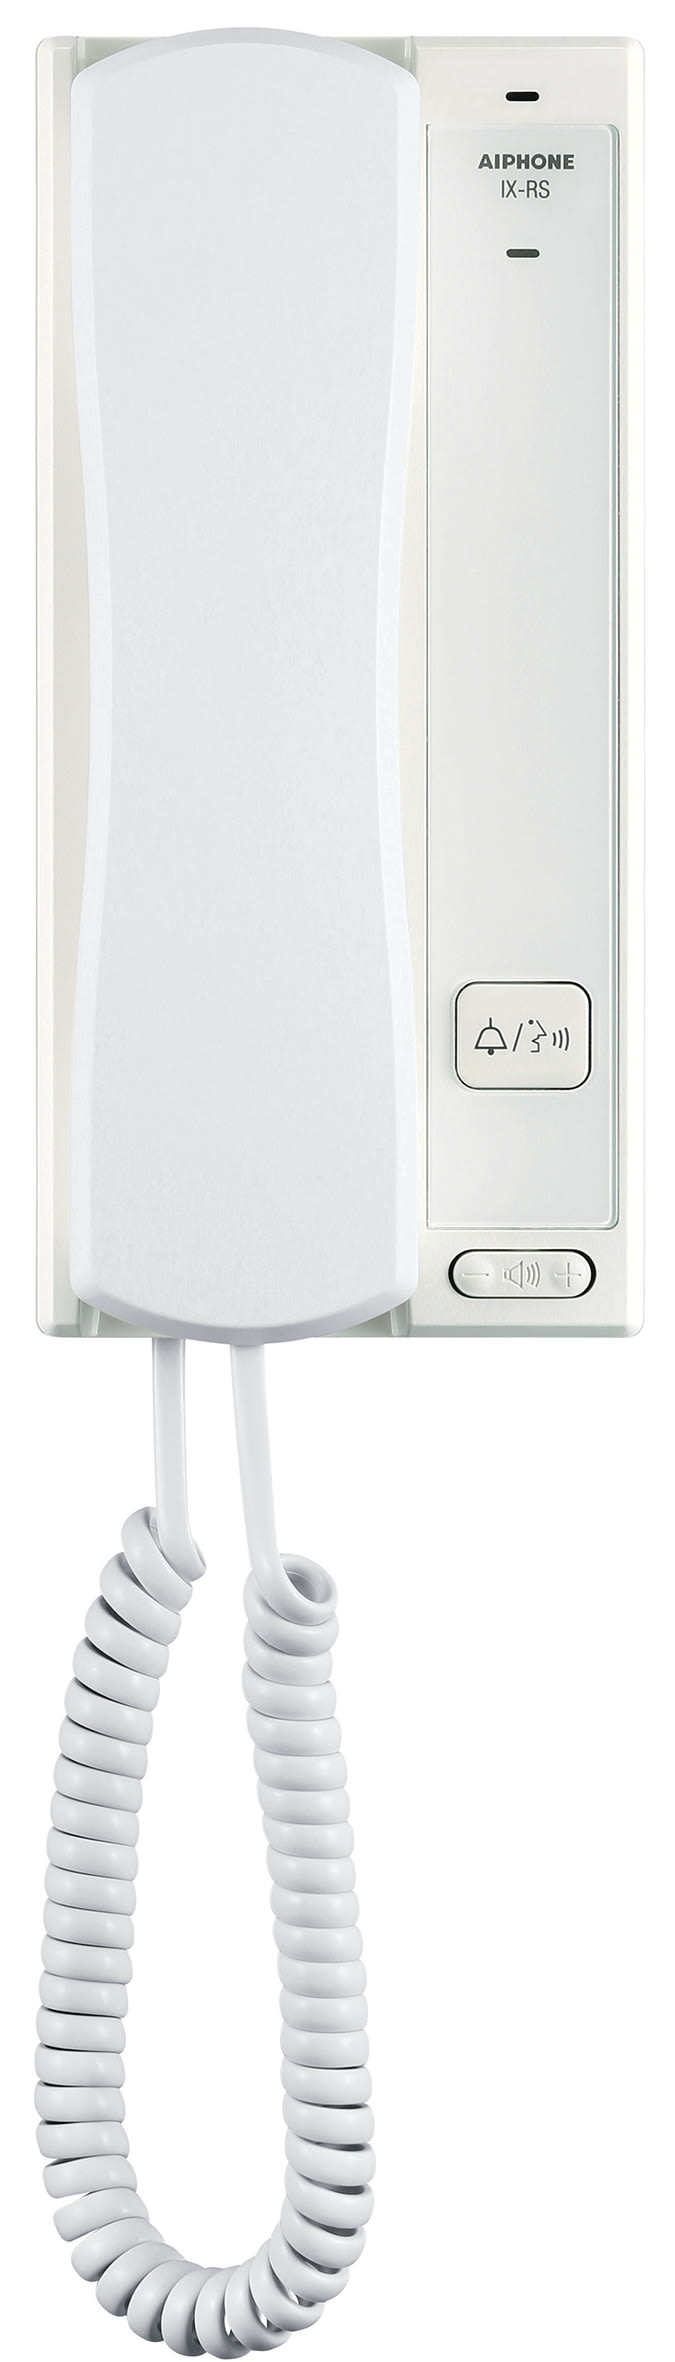 Aiphone - Poste audio secondaire blanc ip -sip sur combine avec ouverture porte